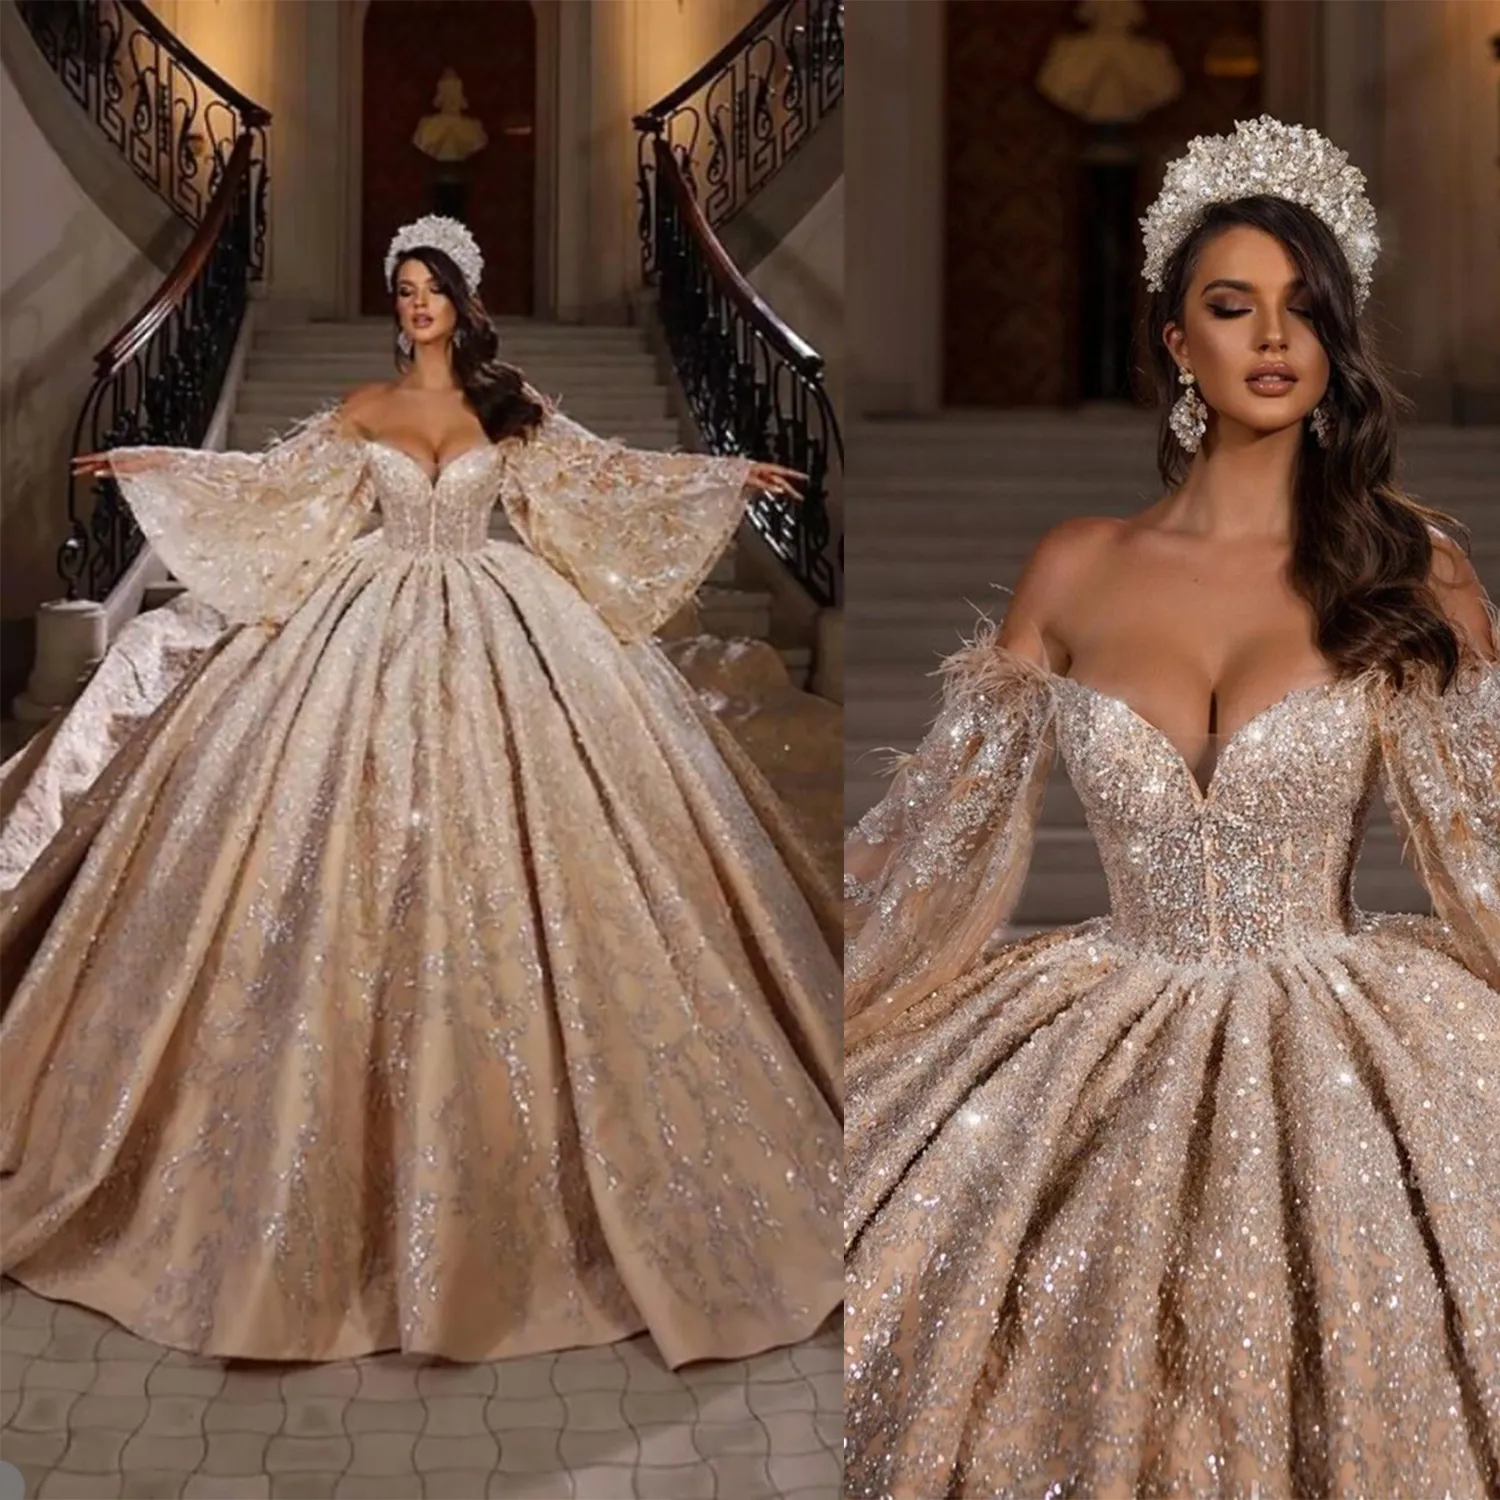 Wspaniała sukienka ślubna Diamentowa kryształowa suknia ślubna ukochana błyszcząca cekinowa cekinowa tiul vestido de novia niestandardowa rozmiar